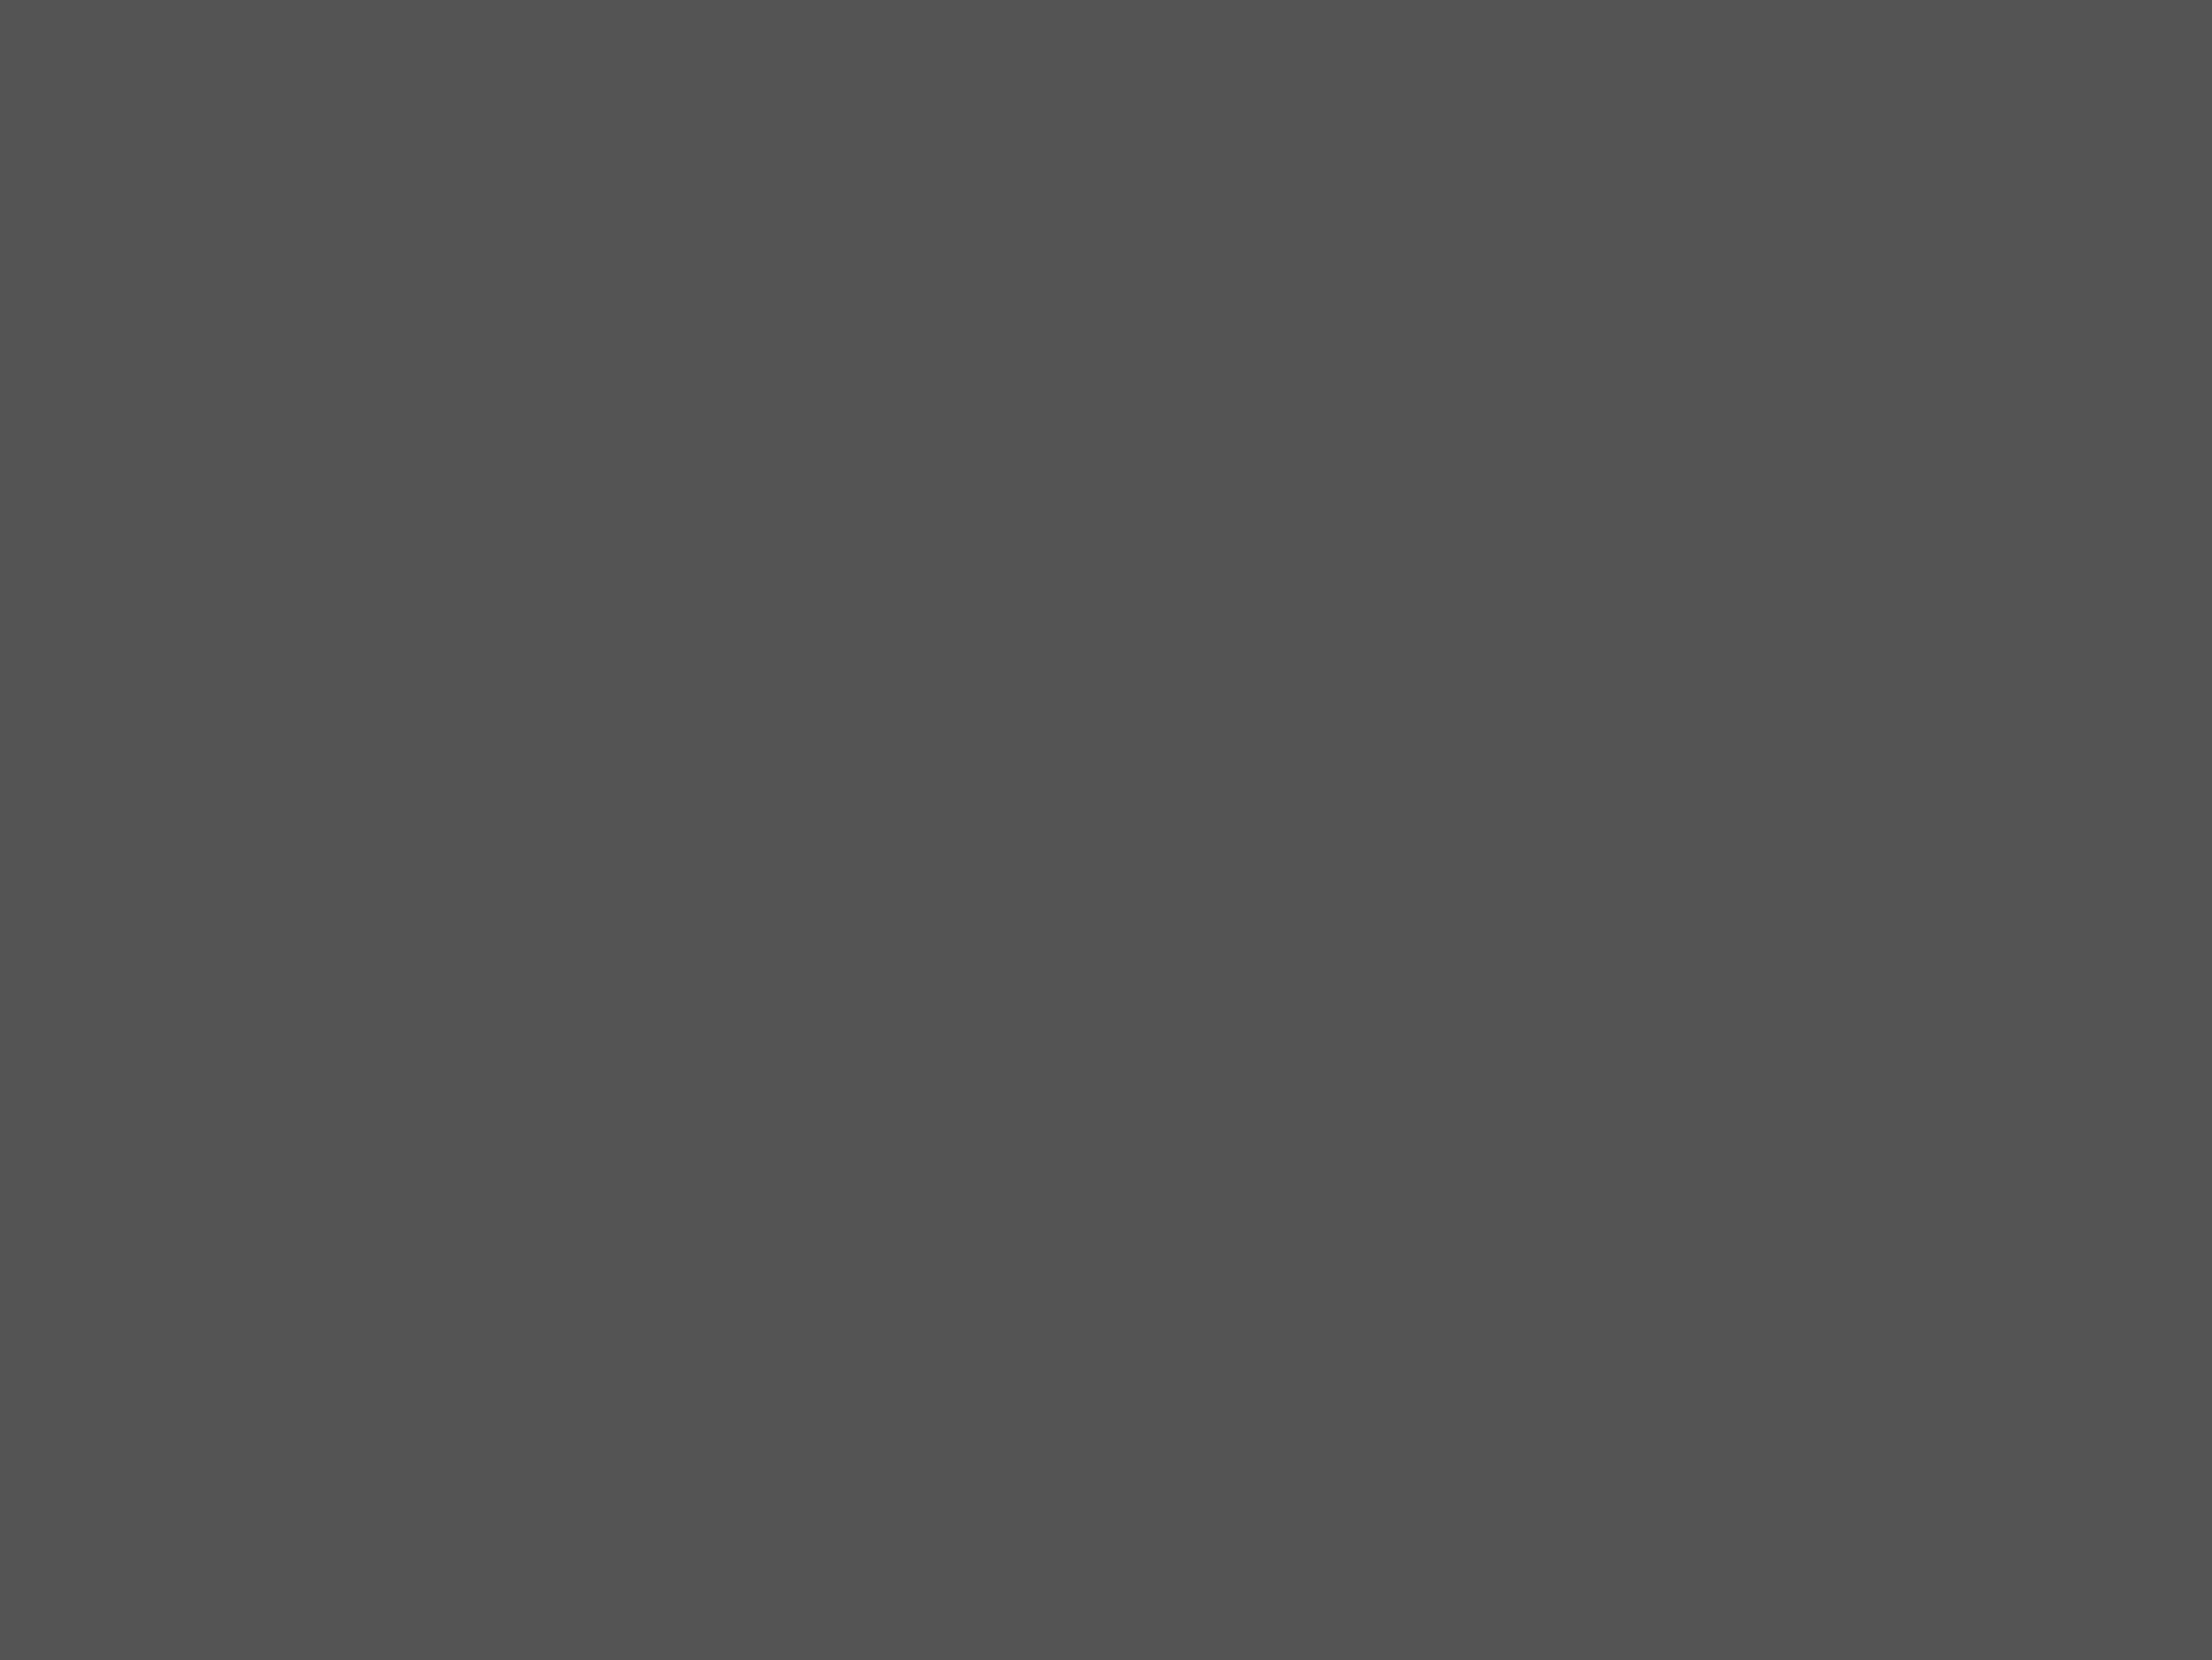 Муслим Магомаев (справа) и поэт Роберт Рождественский. Москва, 1970-е годы. Фотография: Государственный музей истории литературы, искусства и культуры Алтая, Барнаул